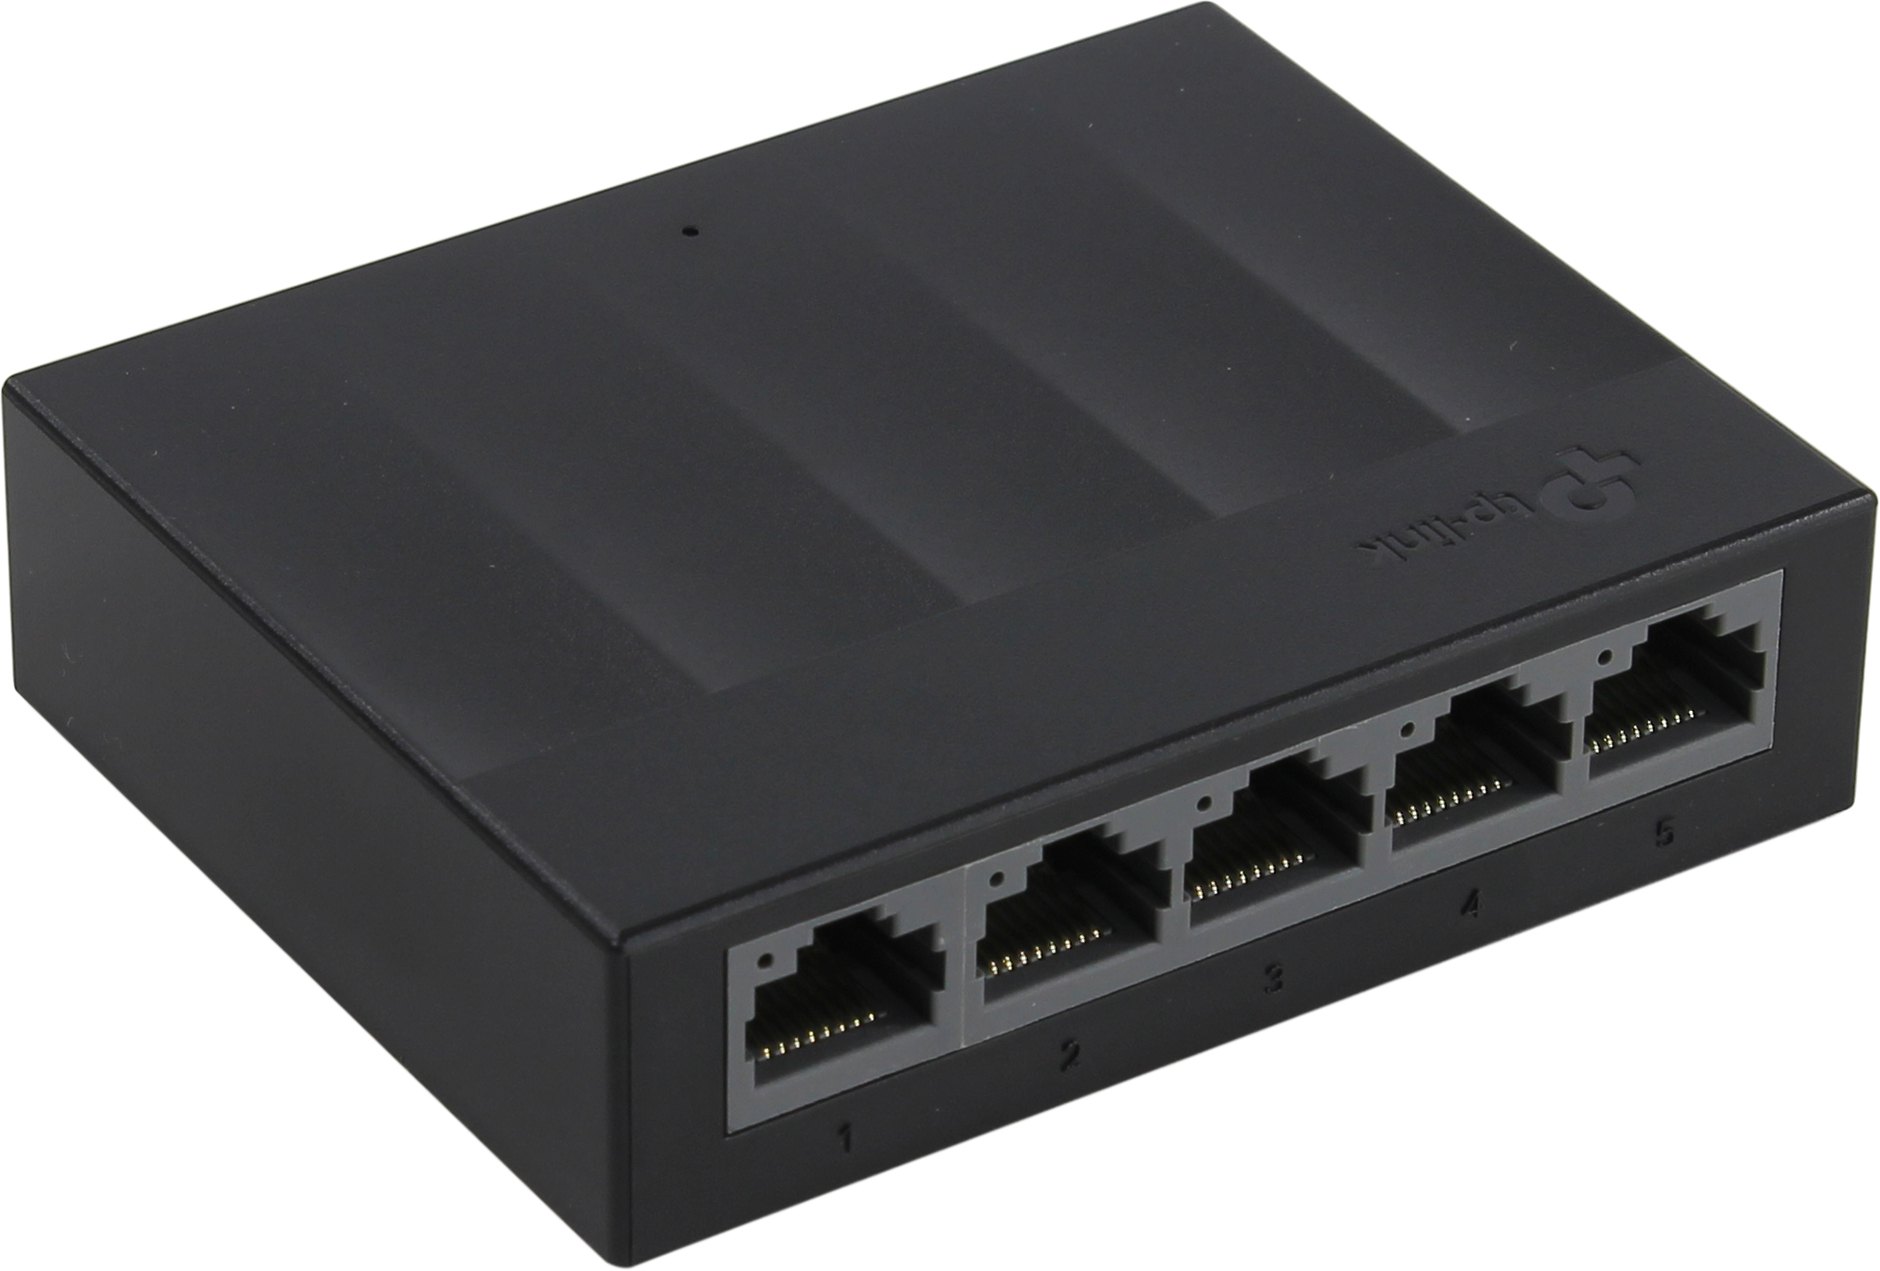 Коммутатор TP-LINK LS1005G, кол-во портов: 5x1 Гбит/с (LS1005G) б/у, минимальные следы эксплуатации, полный комплект